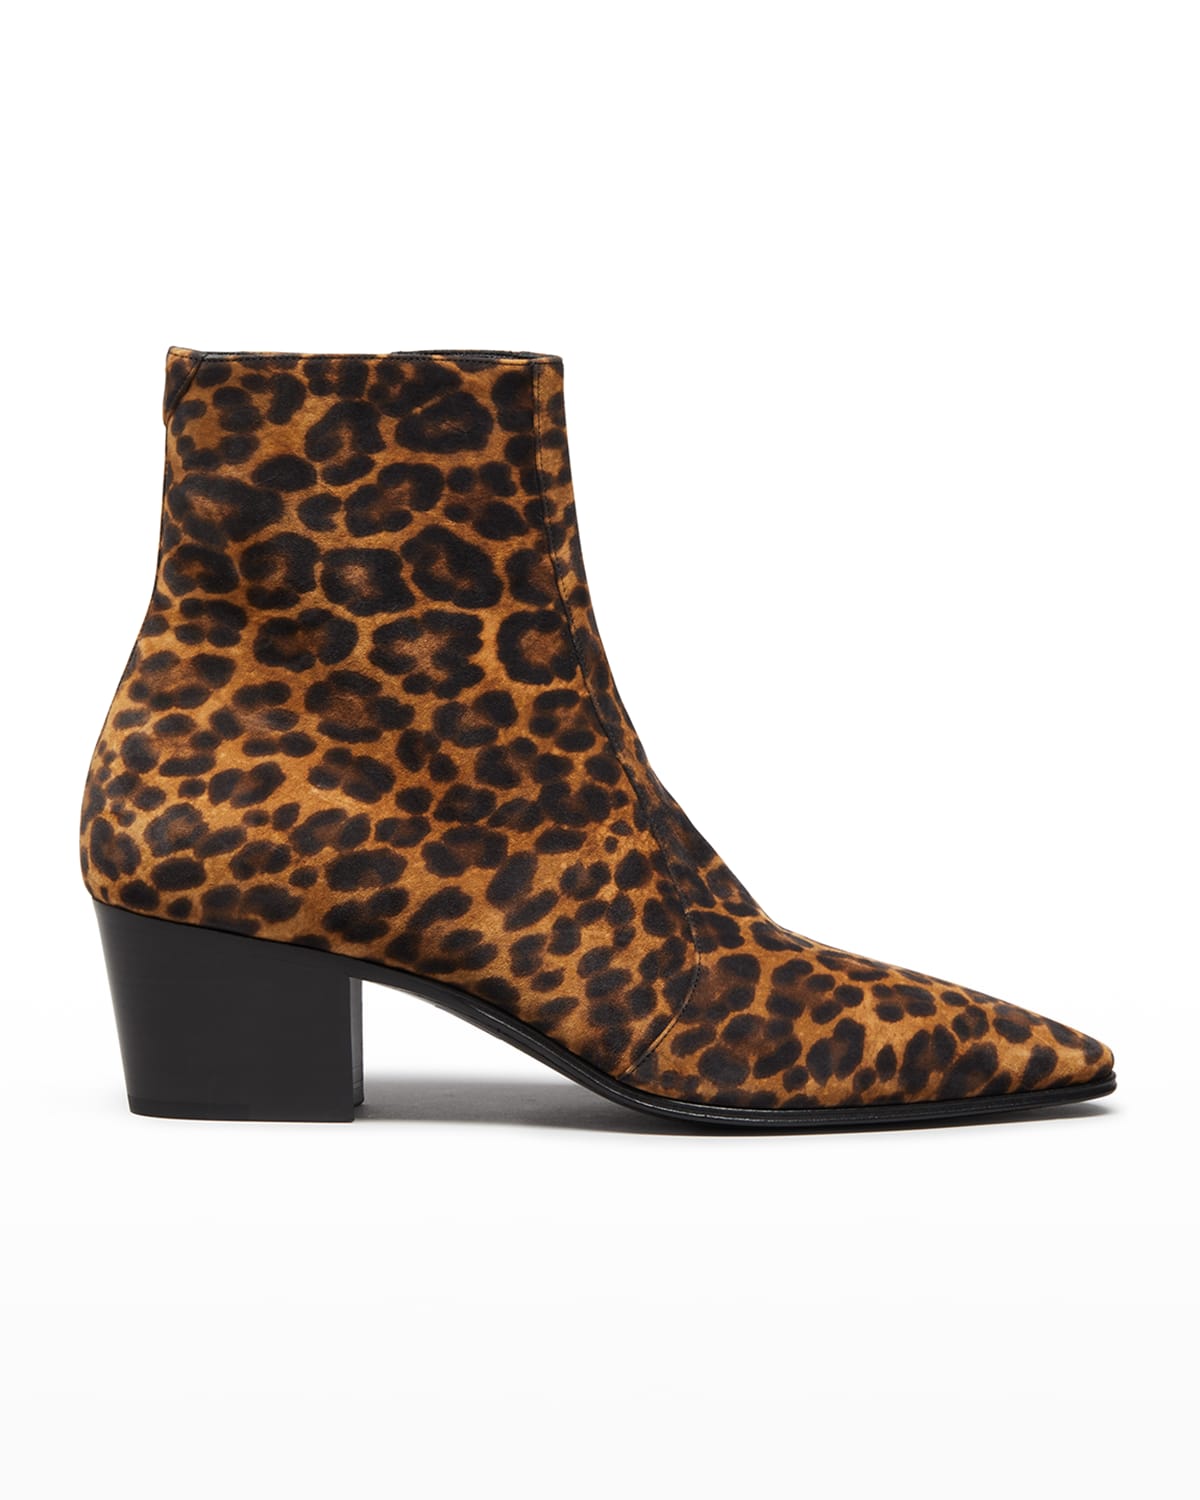 Saint Laurent Men's Vassili Leopard-Print Zipped Leather Boots